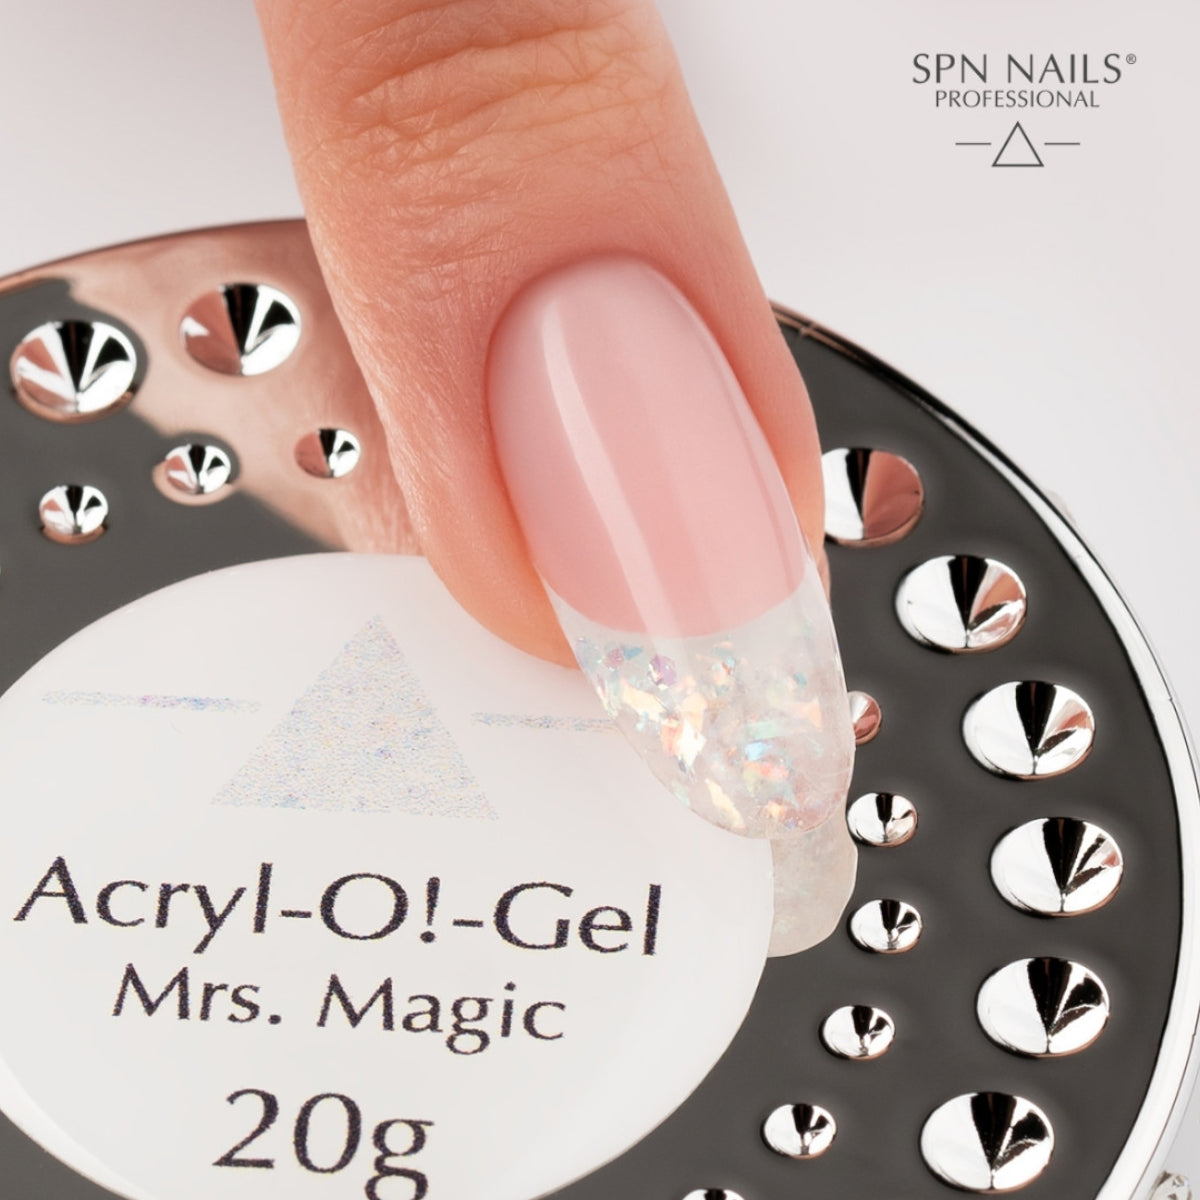 SPN Nails Acryl-O!-Gel Acrylic Gel Mrs. Magic Nails Swatch